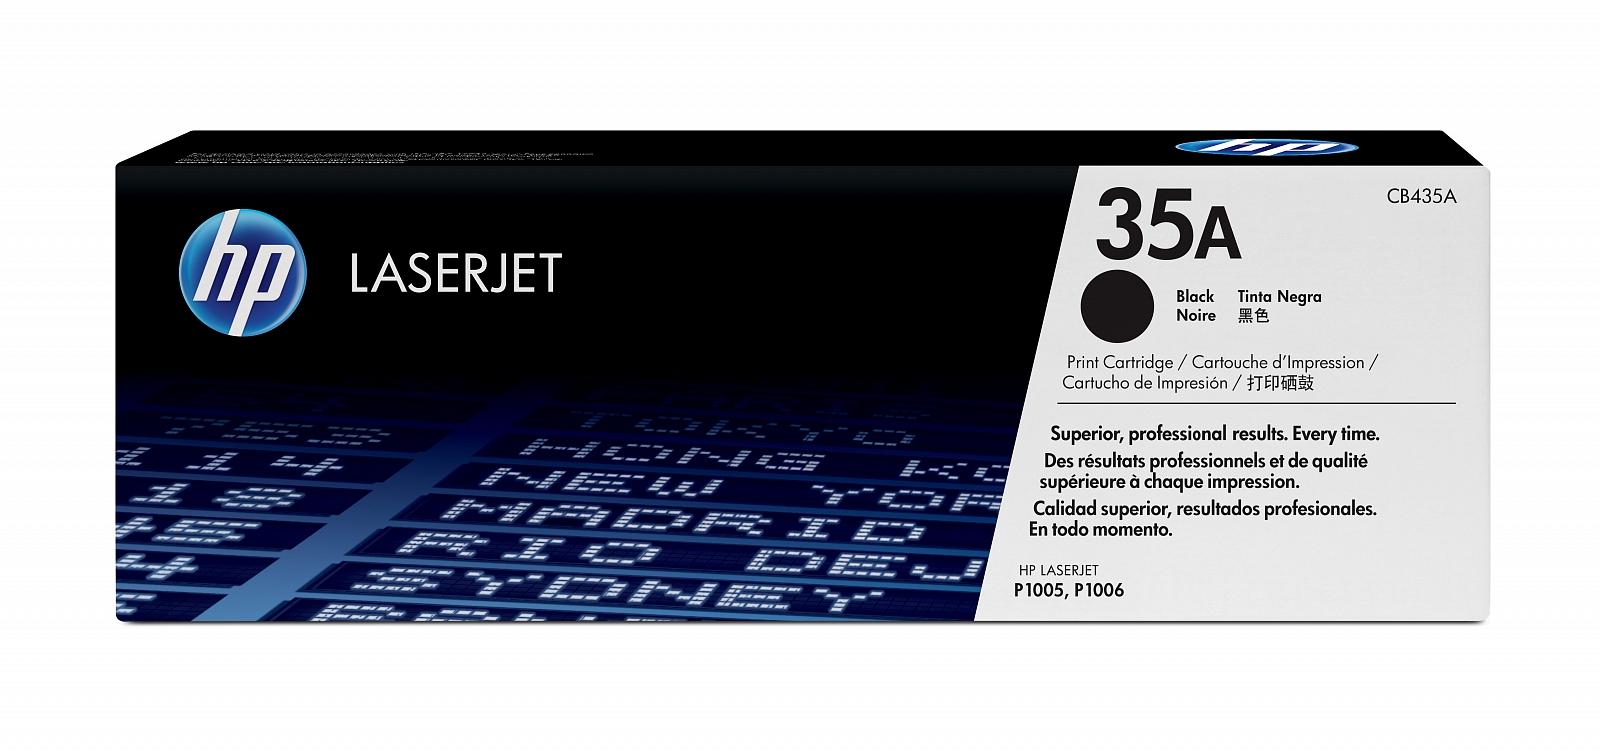 купить Картридж лазерный HP CB435A, черный, На 1500 страниц для HP LaserJet P1005/P1006 в Алматы